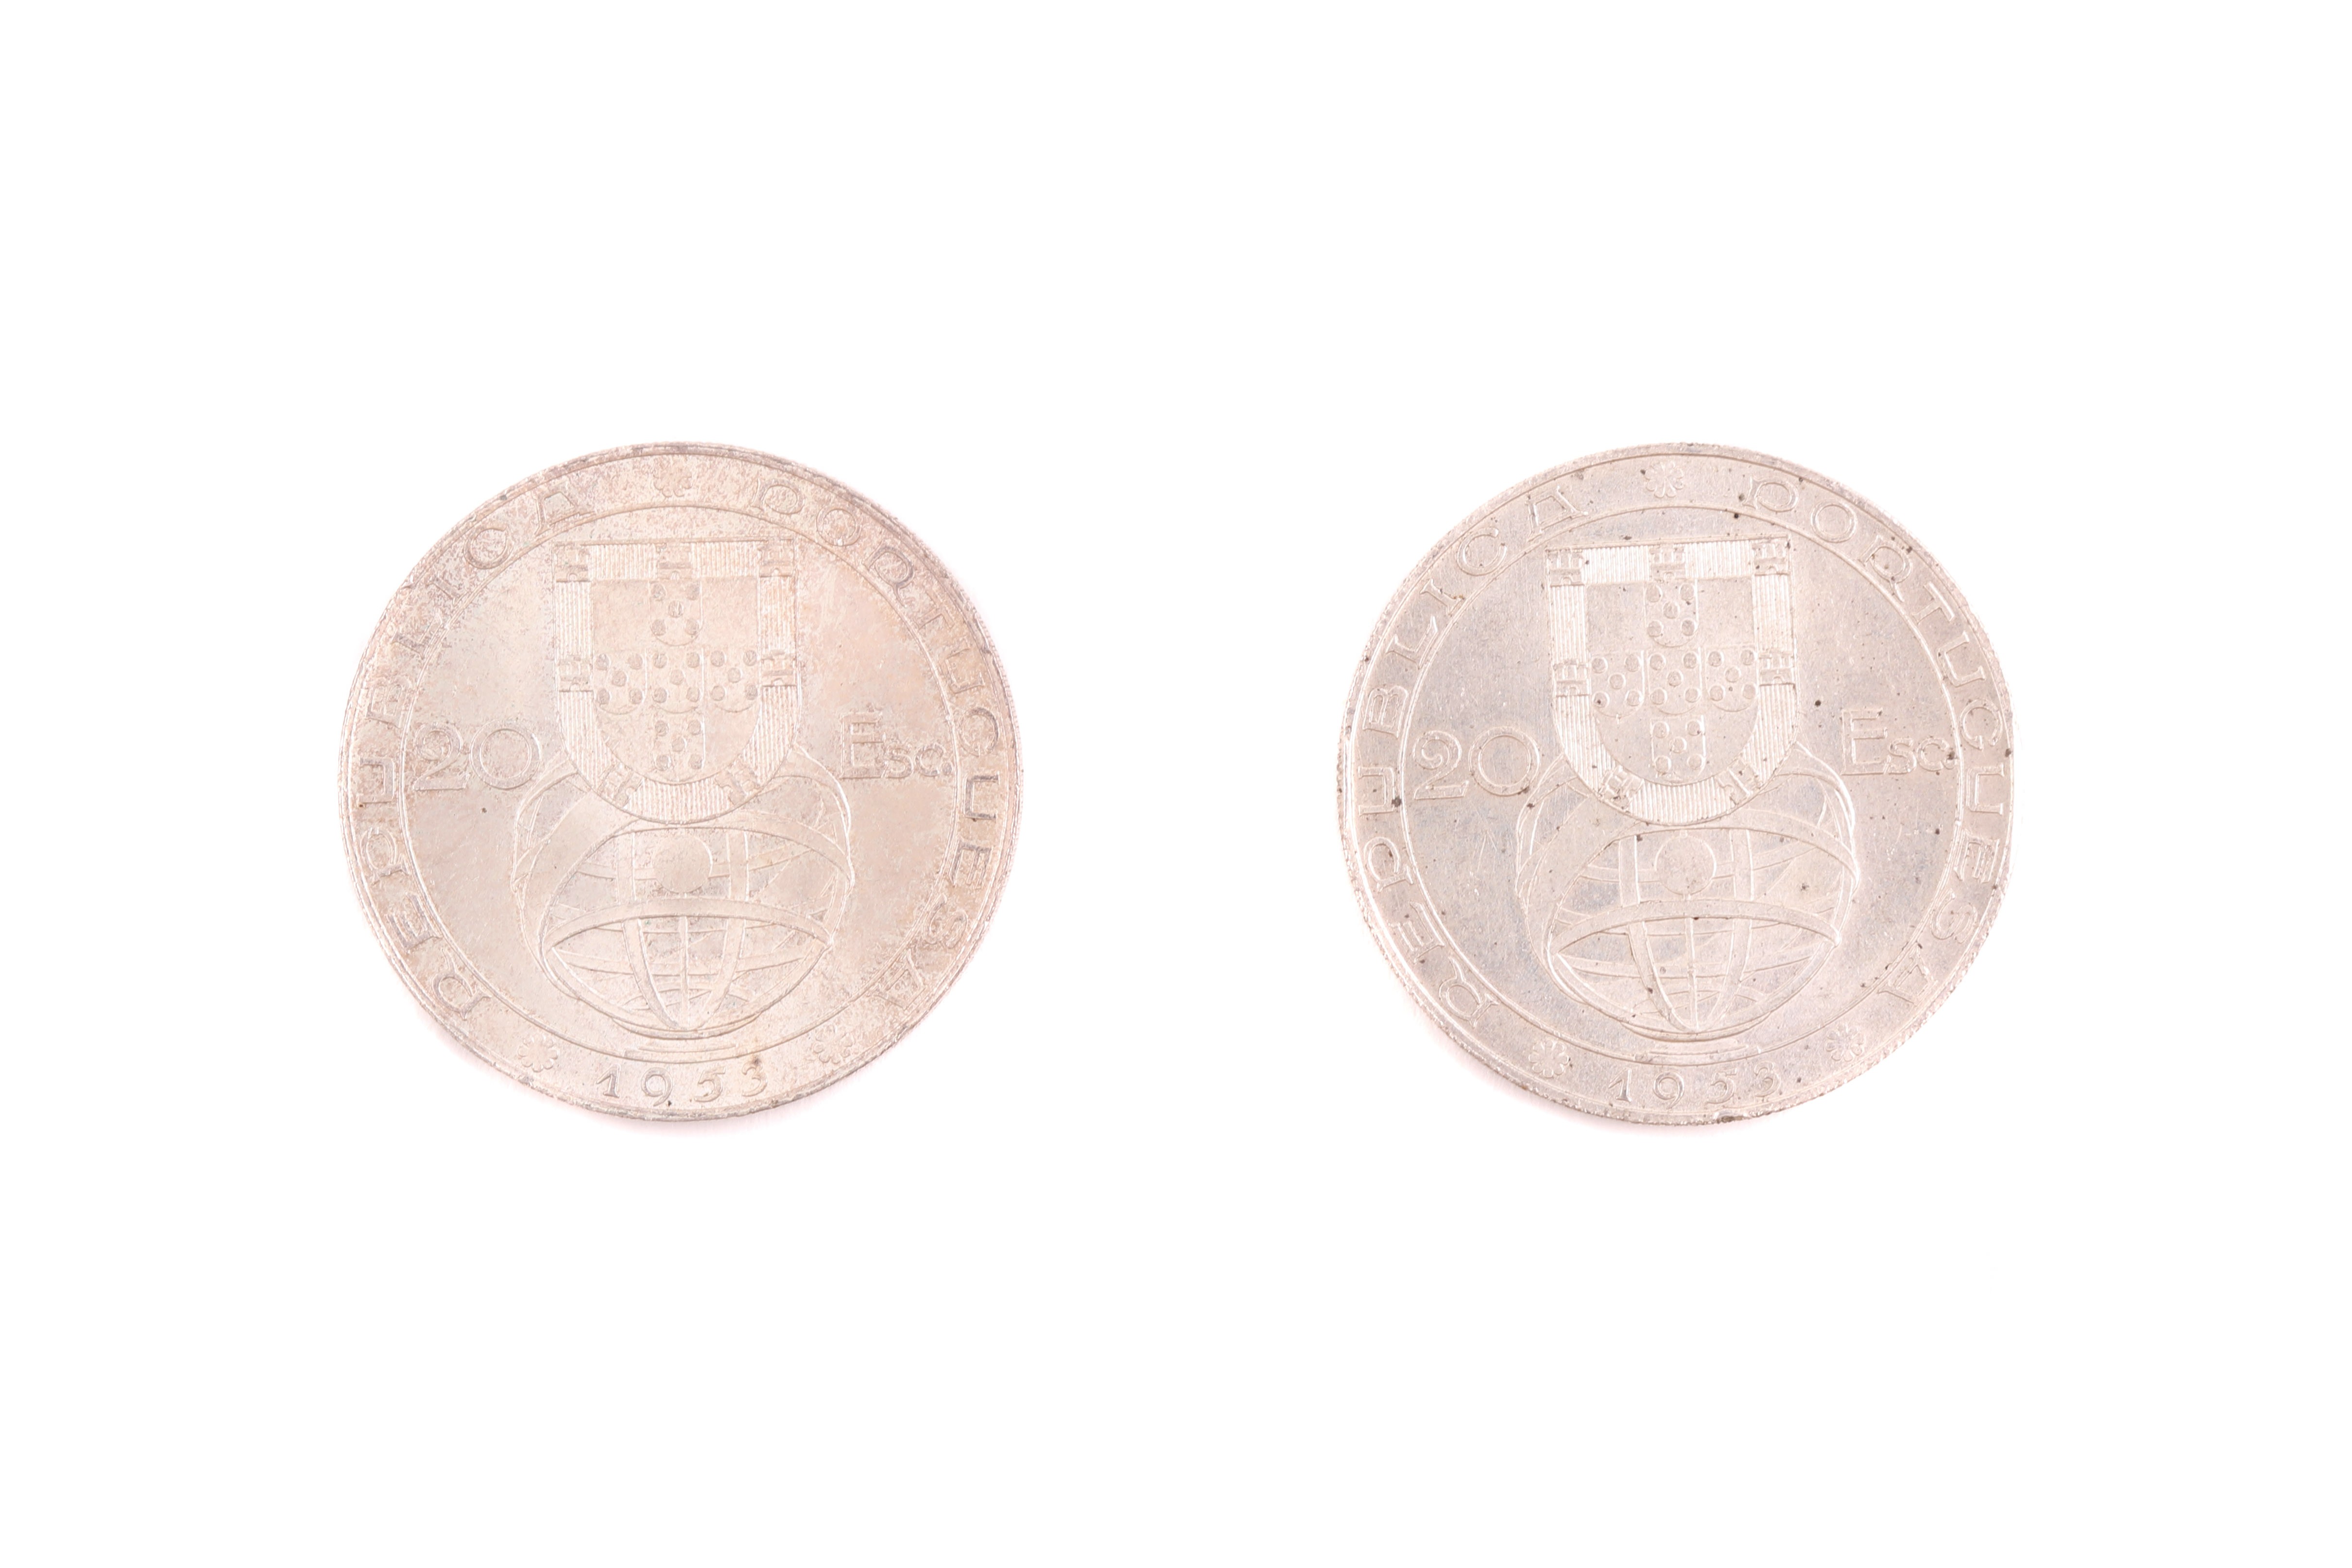 Renovação Financeira, 2 moedas de 20$00, 1953 - prata (2)